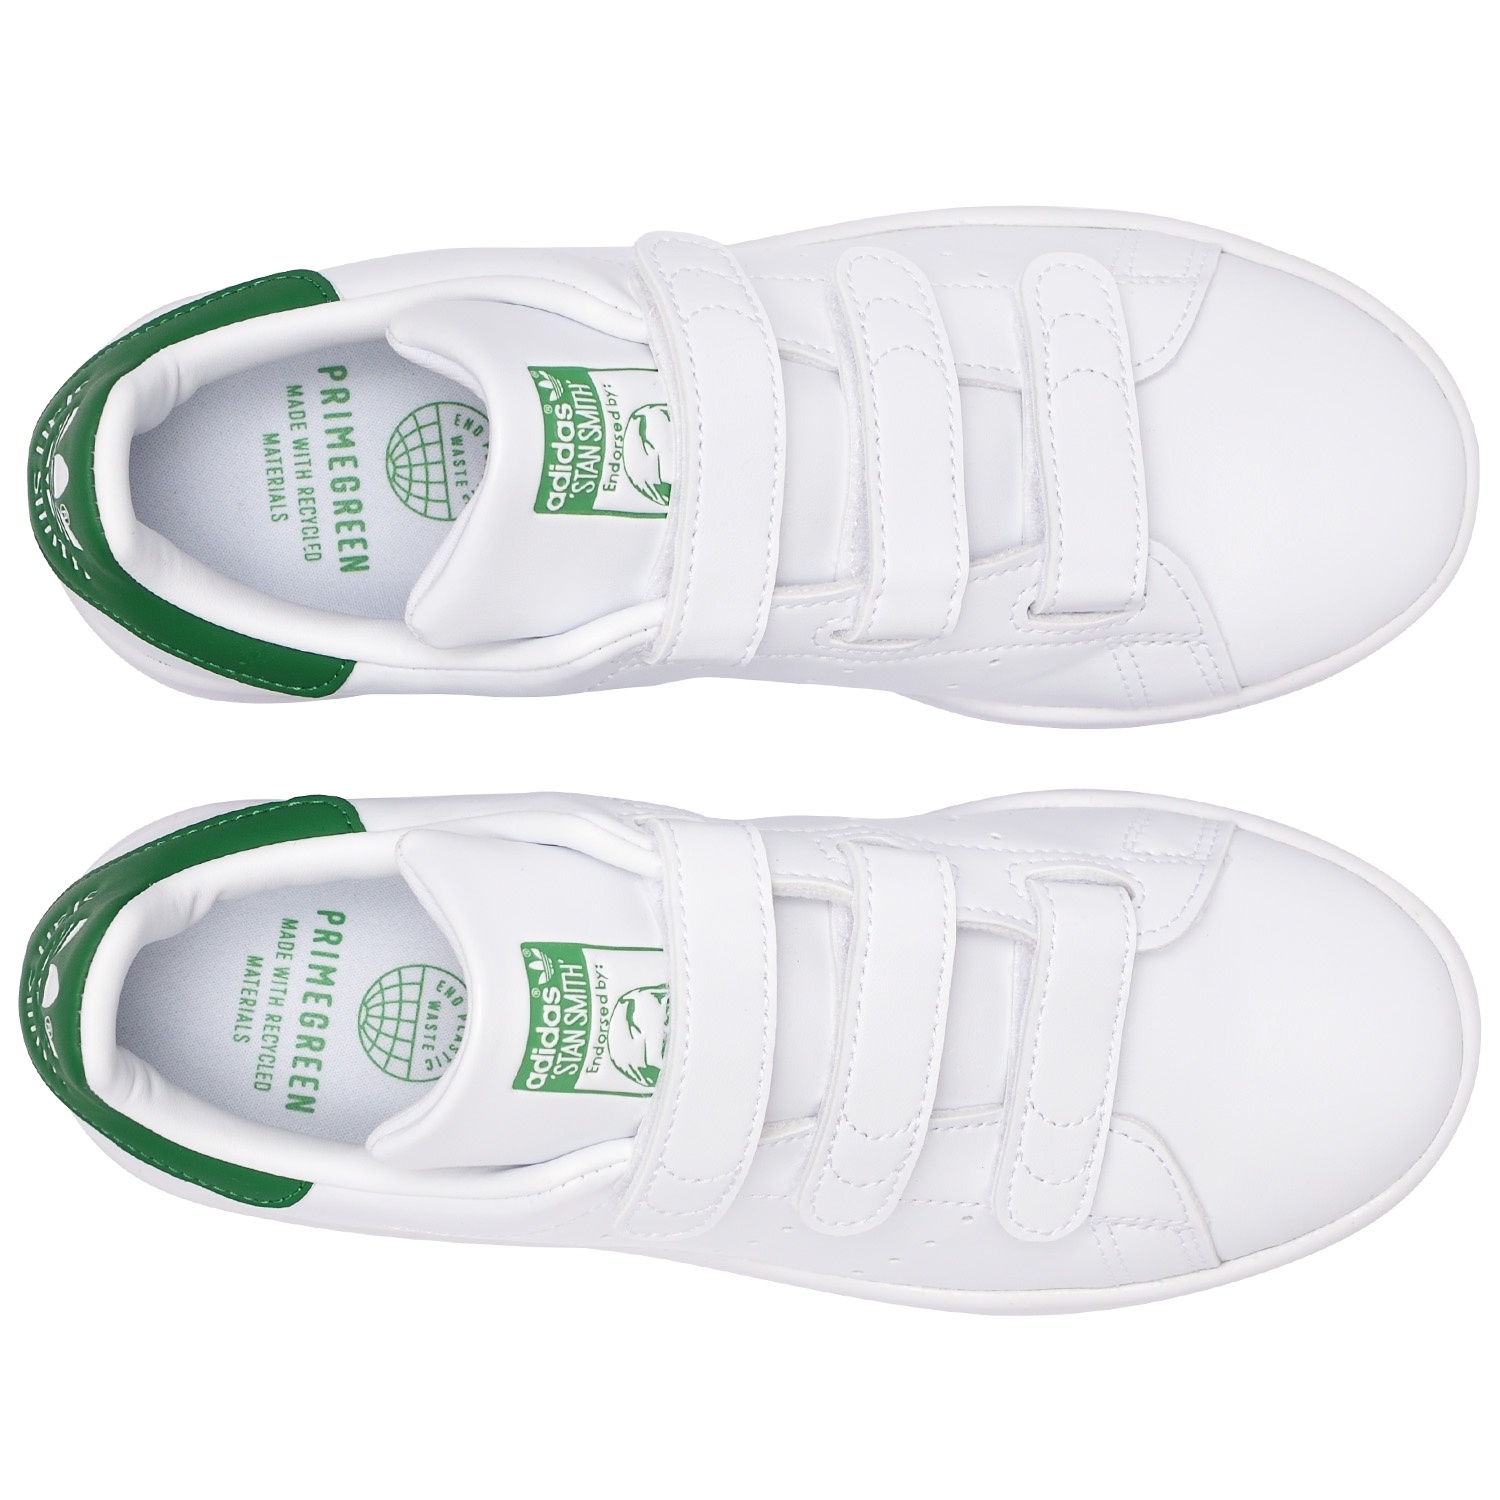 - Green кроссовок, STAN Cloud истории - N9SS релизов лимитированных магазин / adidas Cloud White White Originals и / SMITH.